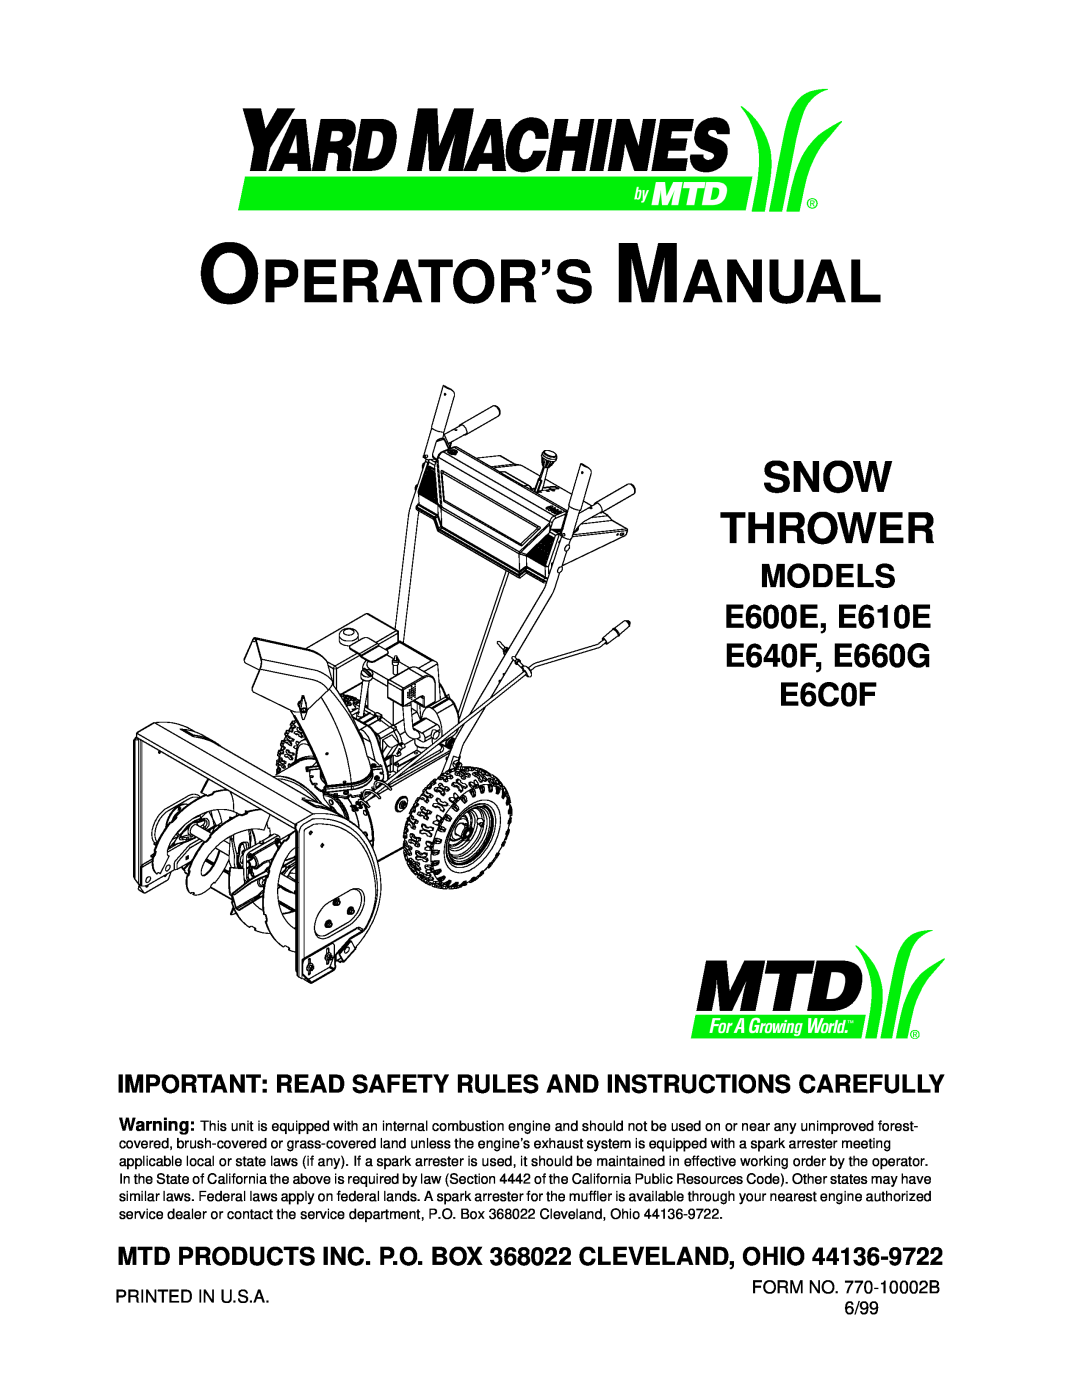 MTD E600E manual Snow Thrower, MTD PRODUCTS INC. P.O. BOX 368022 CLEVELAND, OHIO, Operator’S Manual 